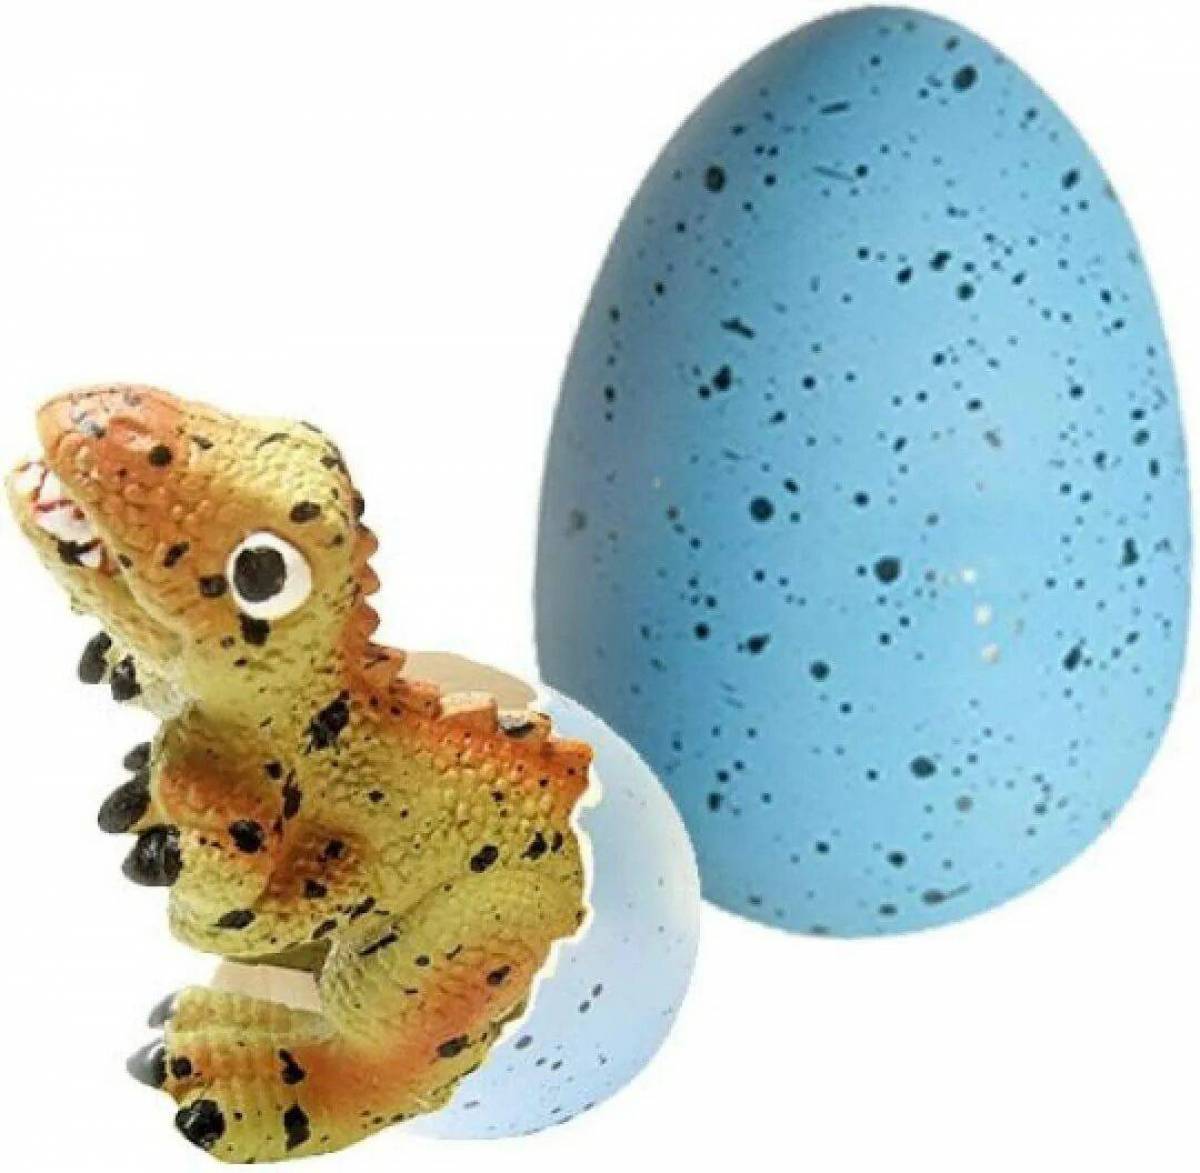 Animal яйцо. Динозавр ЭГГ. Яйцо из которого вылупляется динозавр. Игрушка "динозавр с яйцом". Растущая игрушка в яйце динозавра.